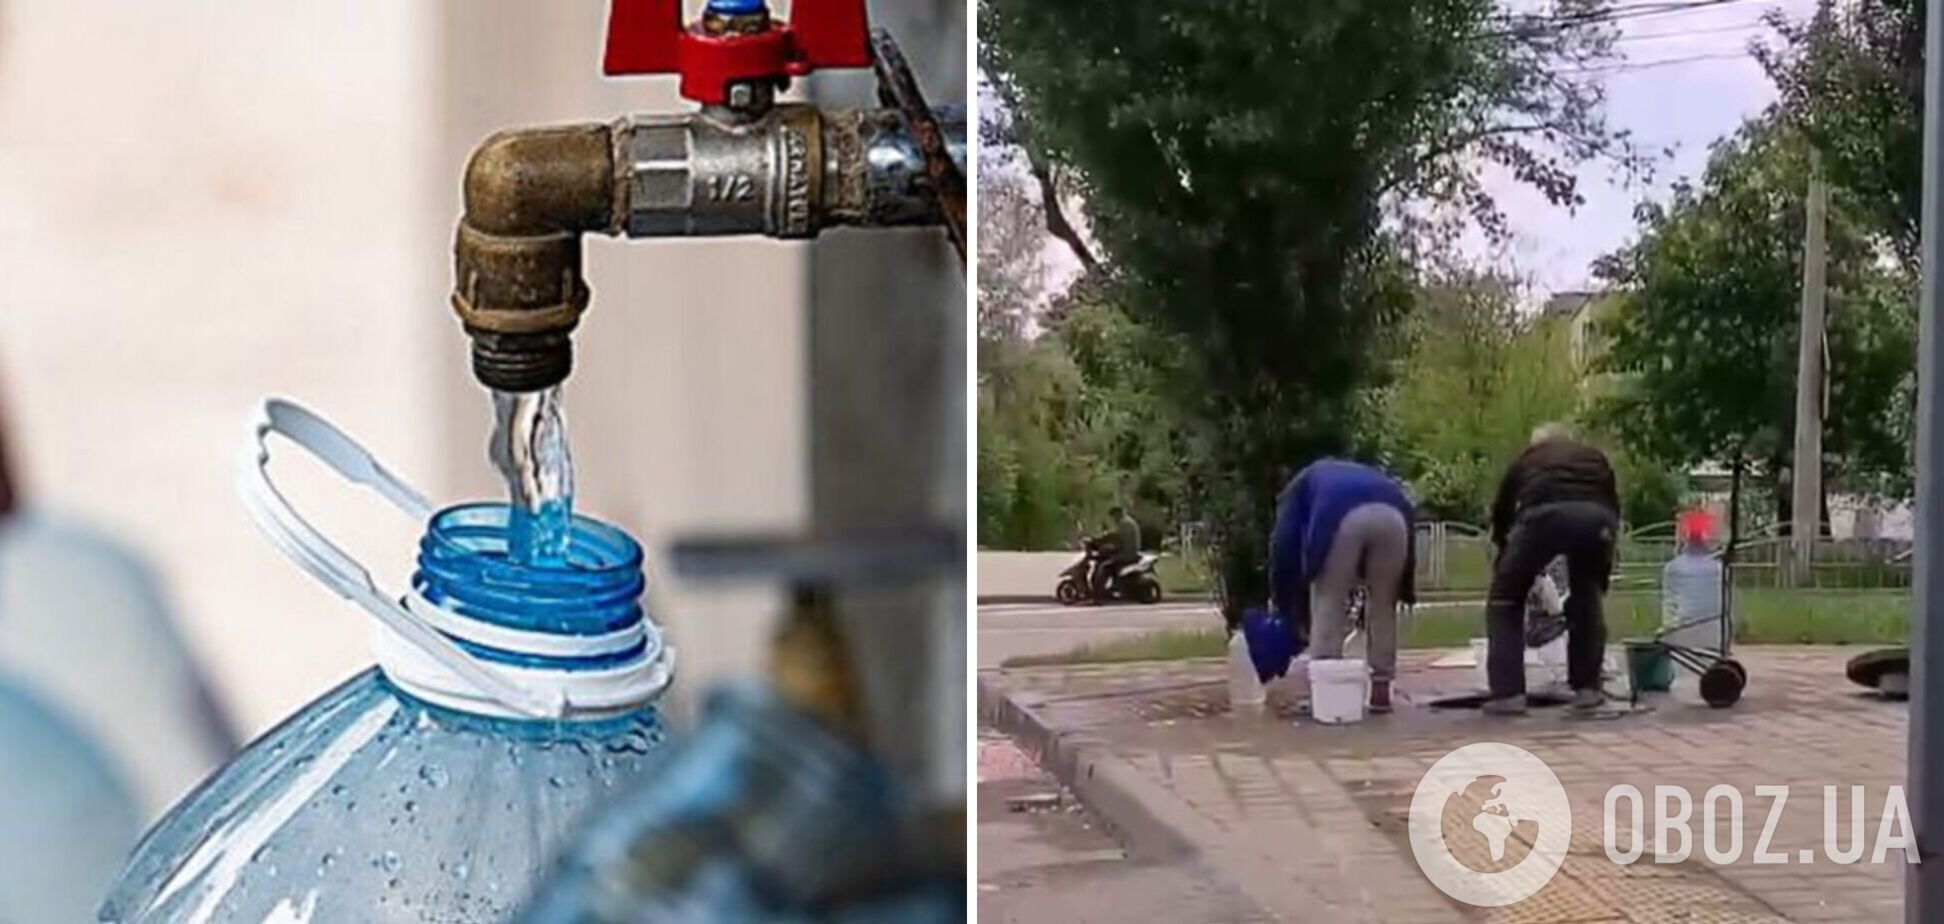 Жители Мариуполя вынуждены использовать для питья техническую воду